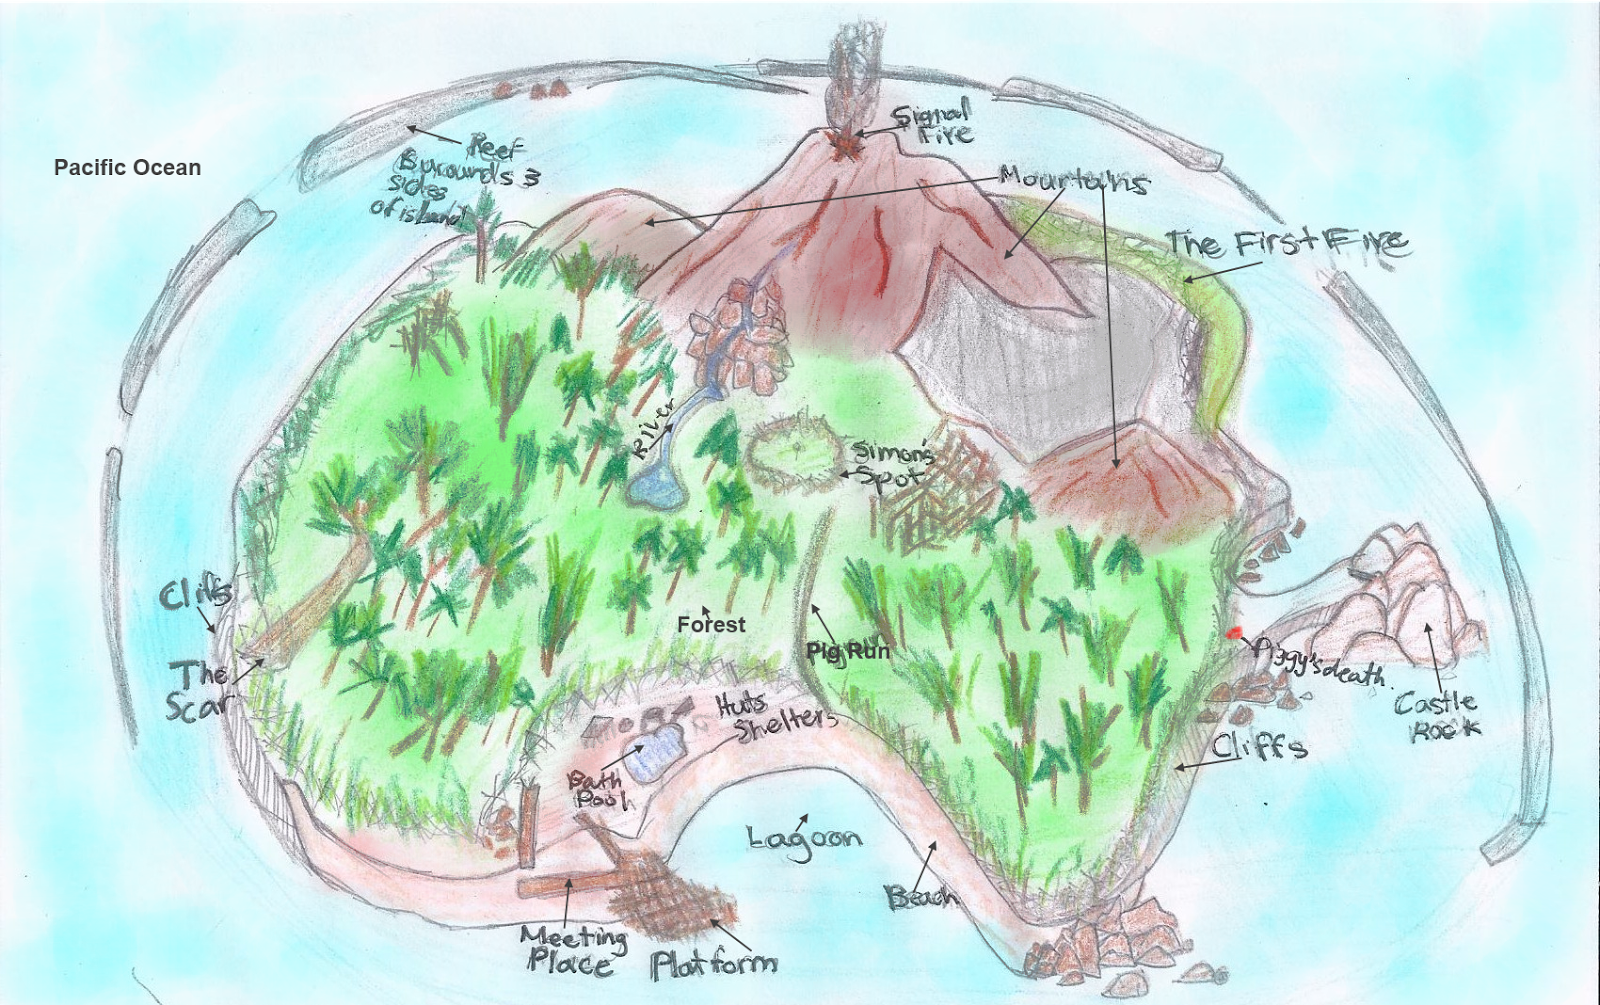 Карта робинзона крузо. Остров Робинзона Крузо карта острова. Карта острова Робинзона Крузо по книге. Карта острова Робинзона Крузо рисунок. Карта острова Робинзона Крузо рисунок по книге Дефо.